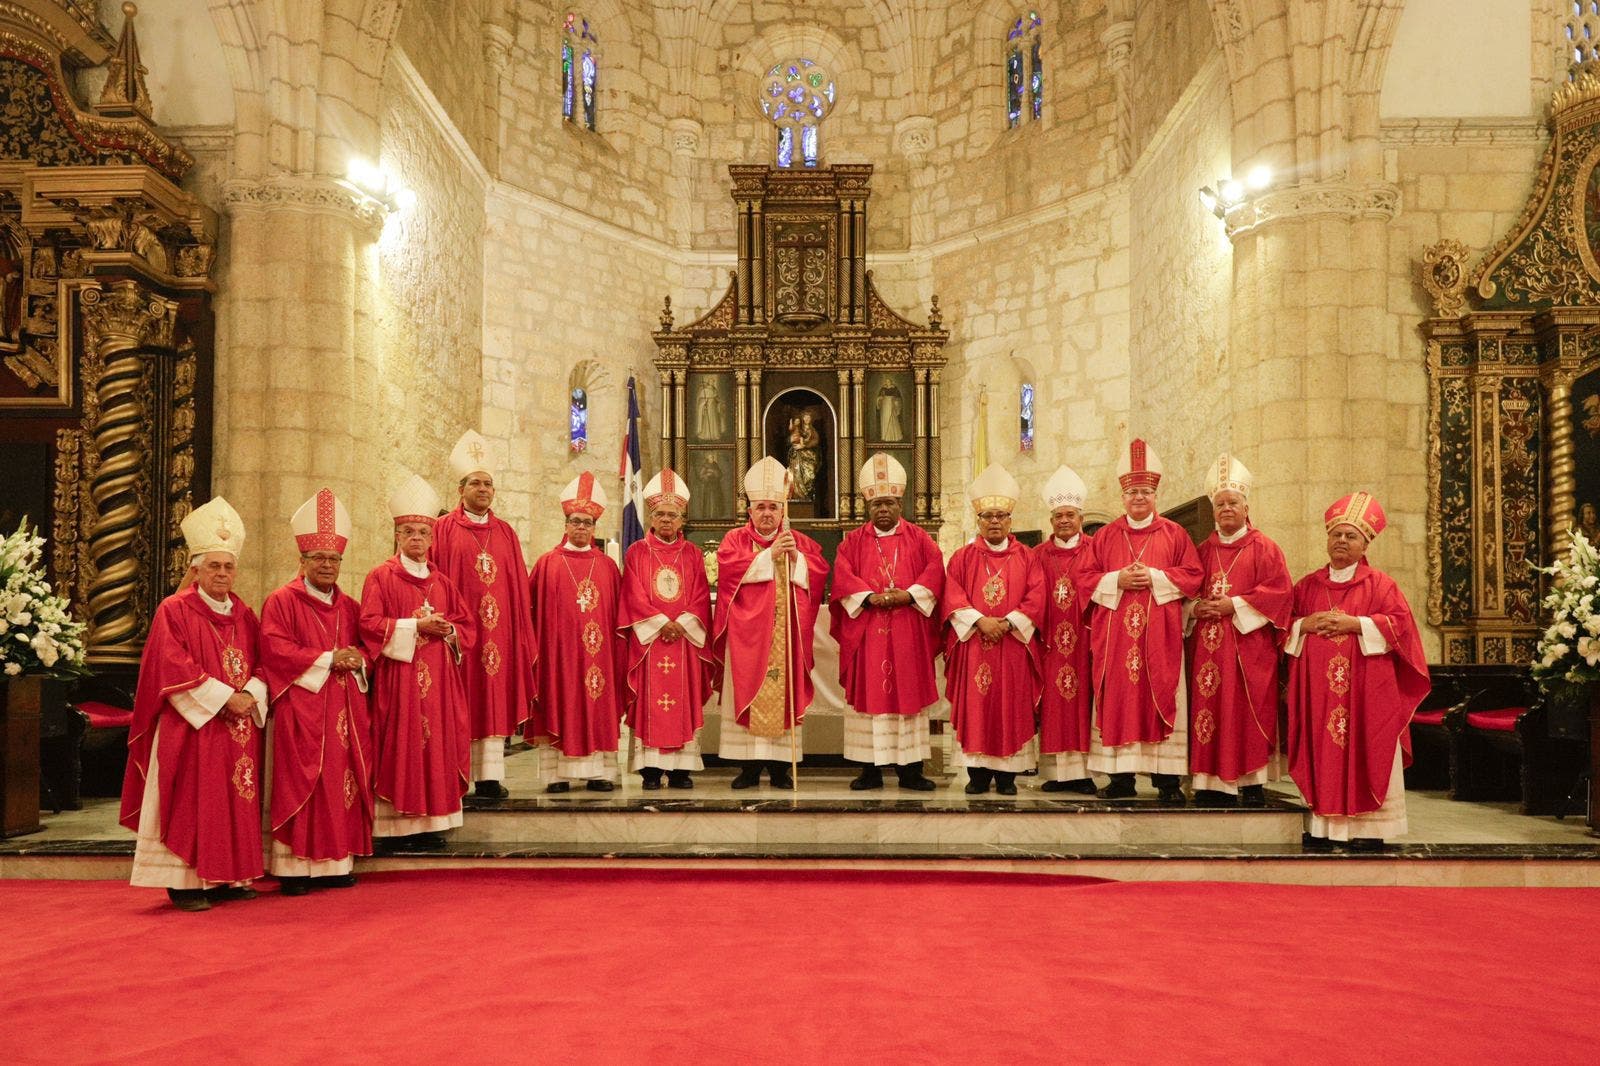 Obispos clausuran Asamblea Plenaria, evalúan acciones pastorales y situación del país